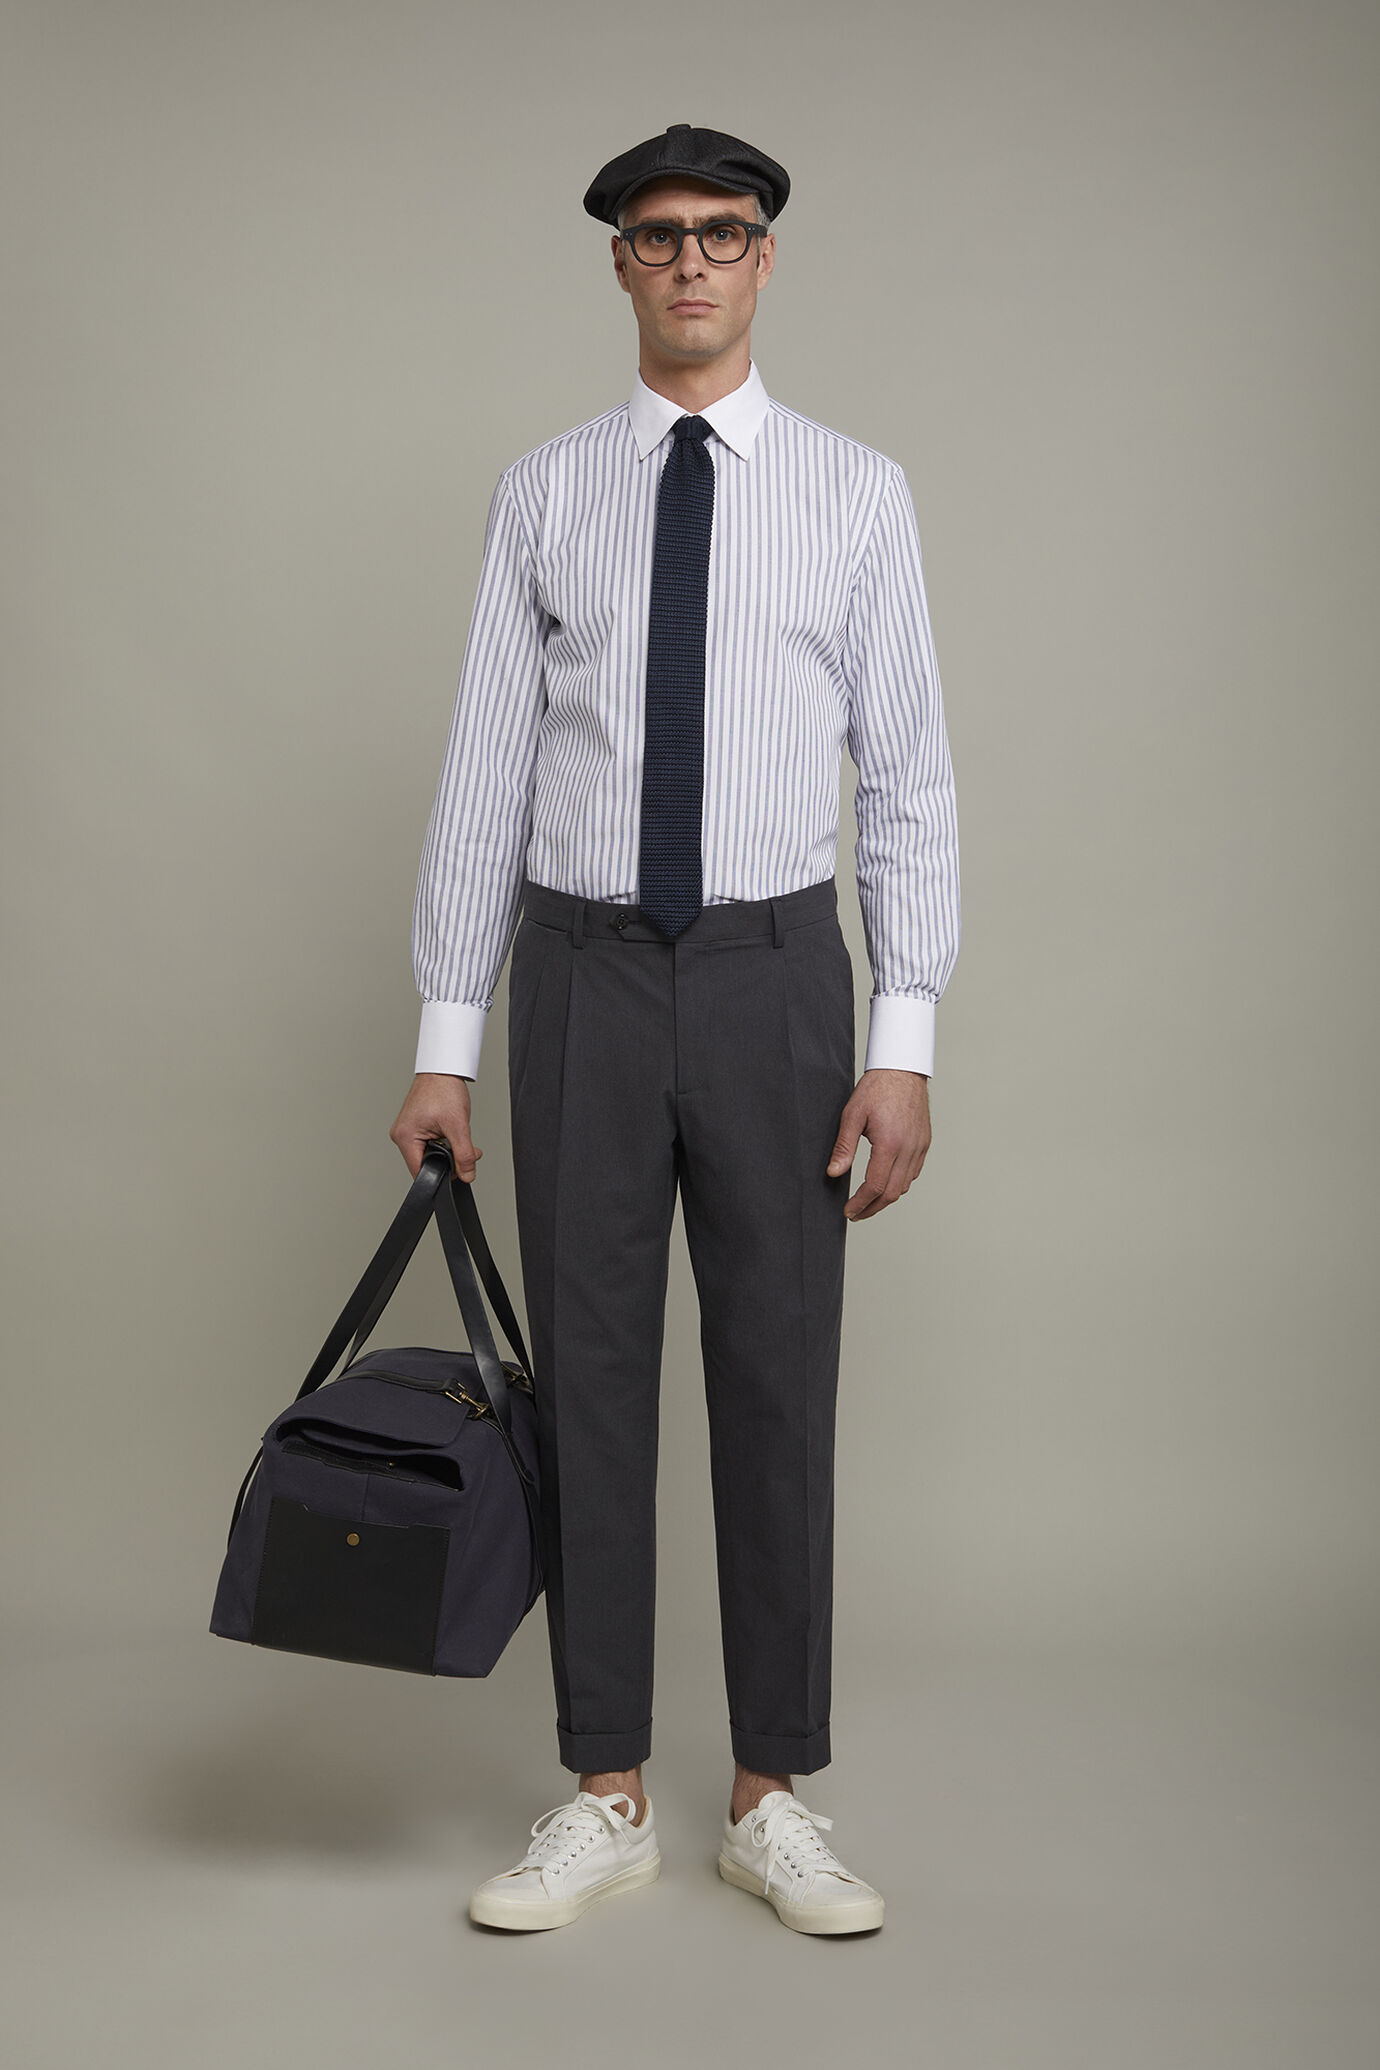 Camicia uomo collo classico 100% cotone tessuto tinto filo riga larga regular fit